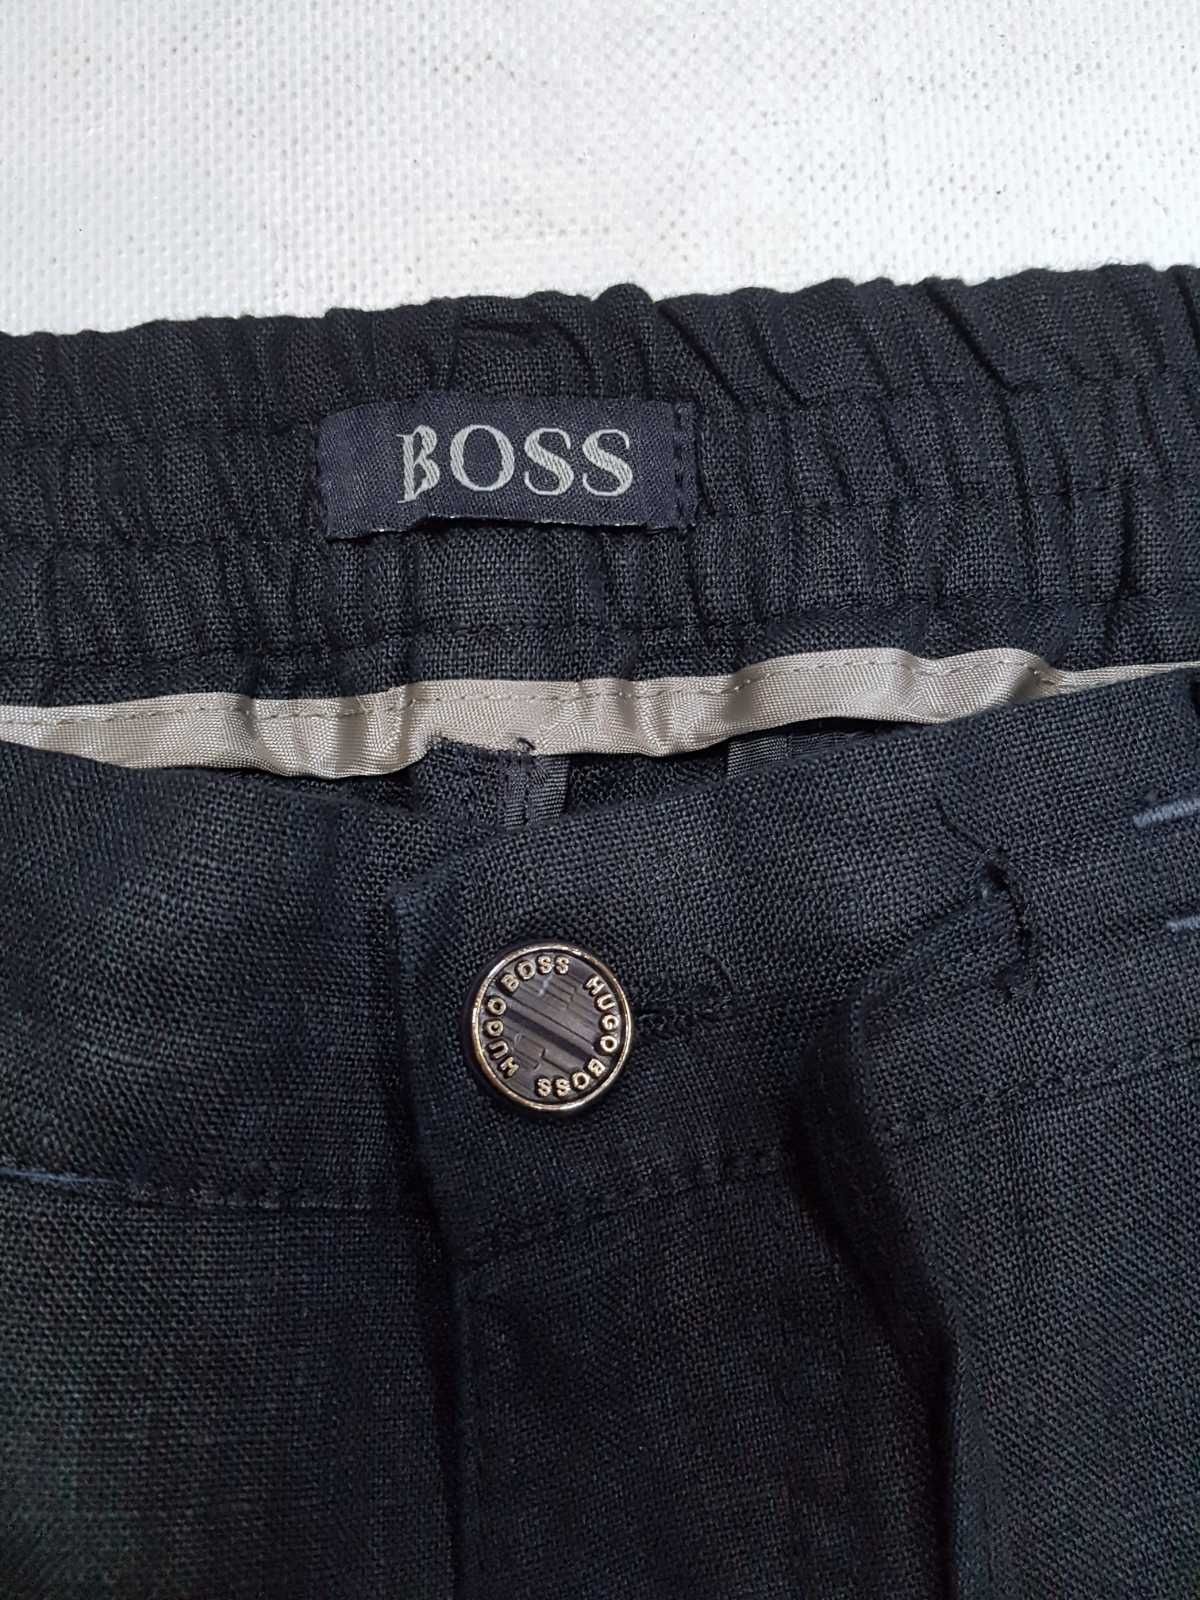 Мужские штаны, брюки Boss, лён